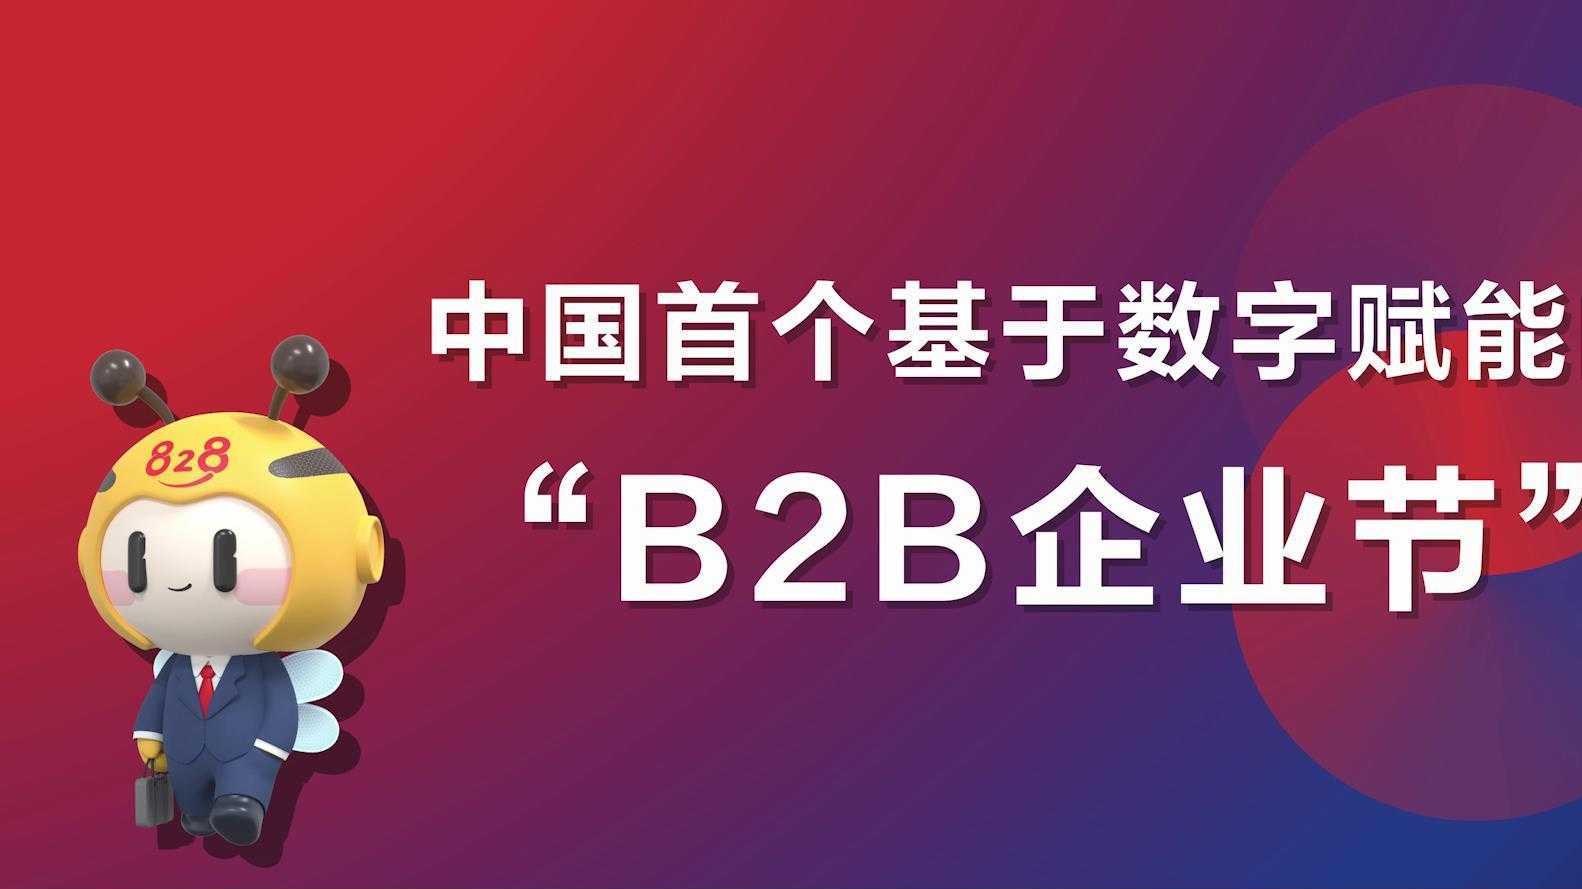 华为云 828 B2B企业节